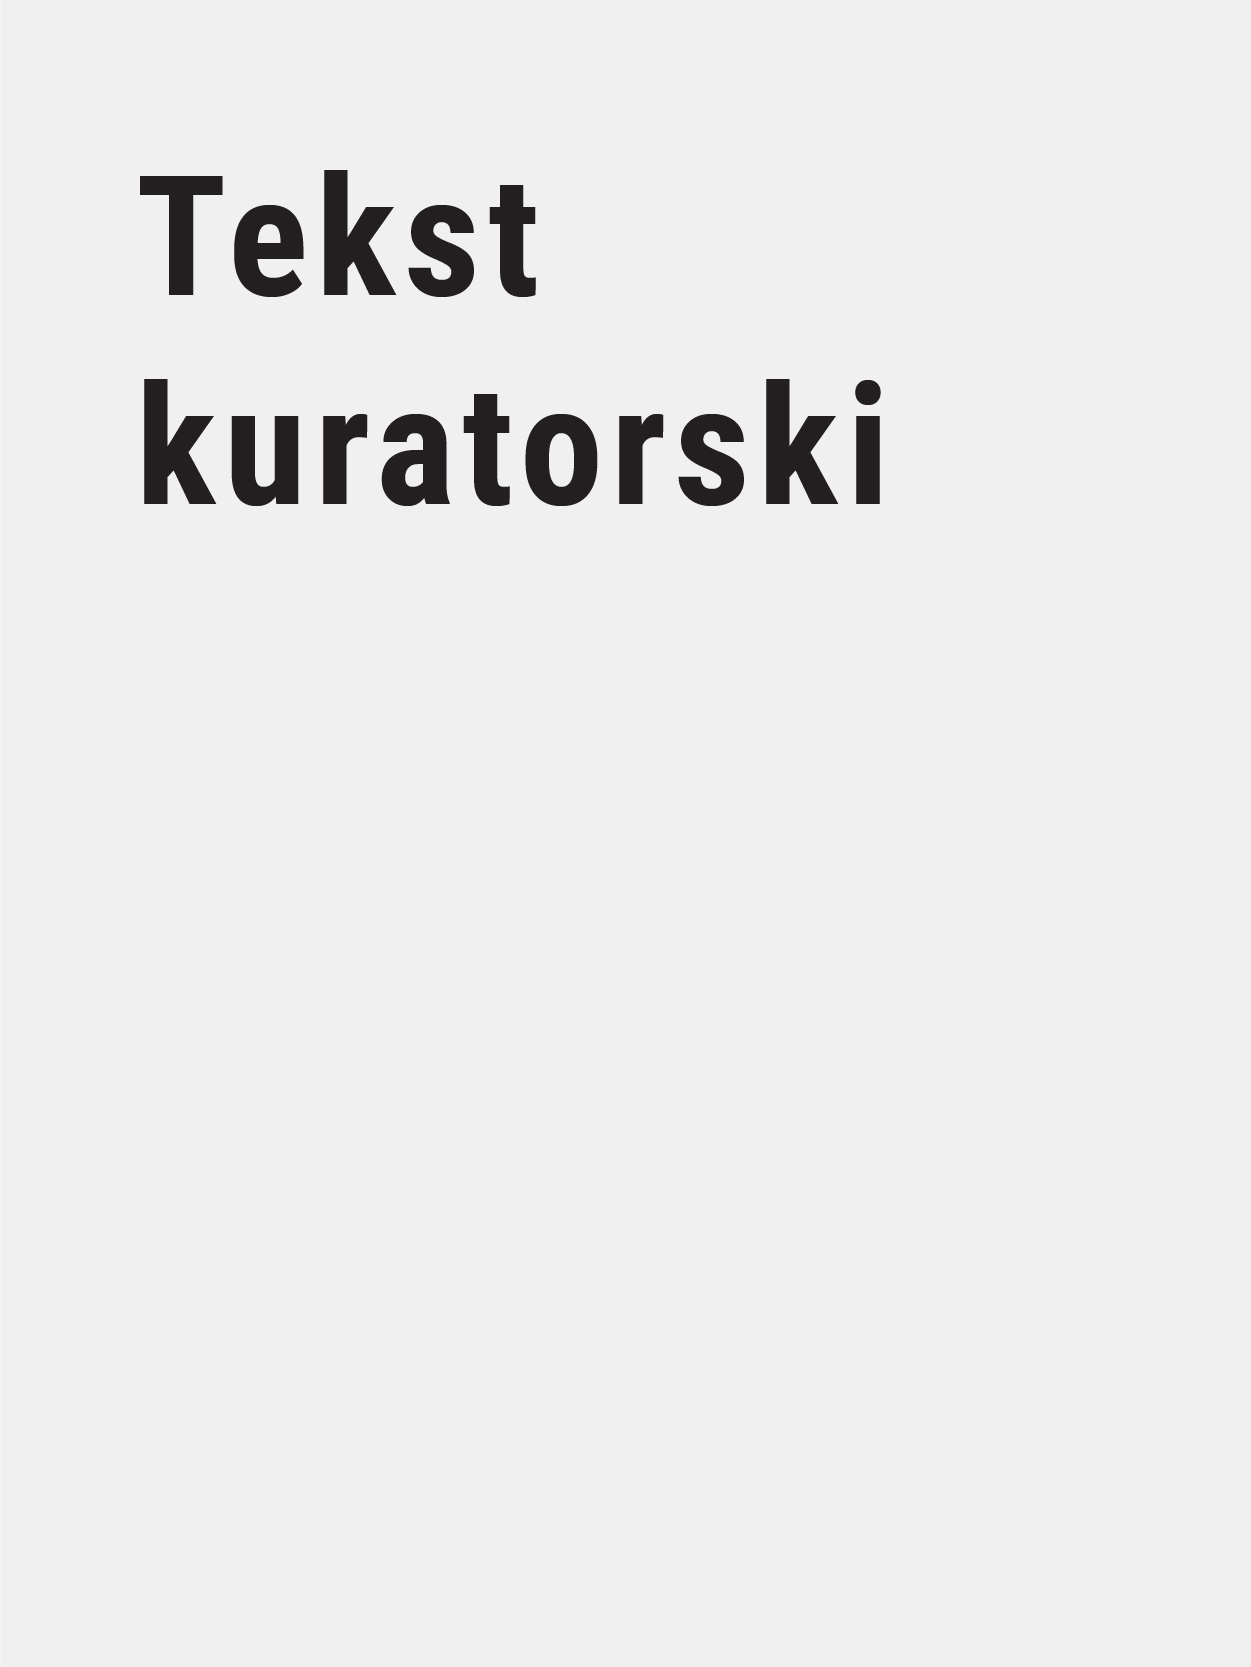 Piotr Kurka texts